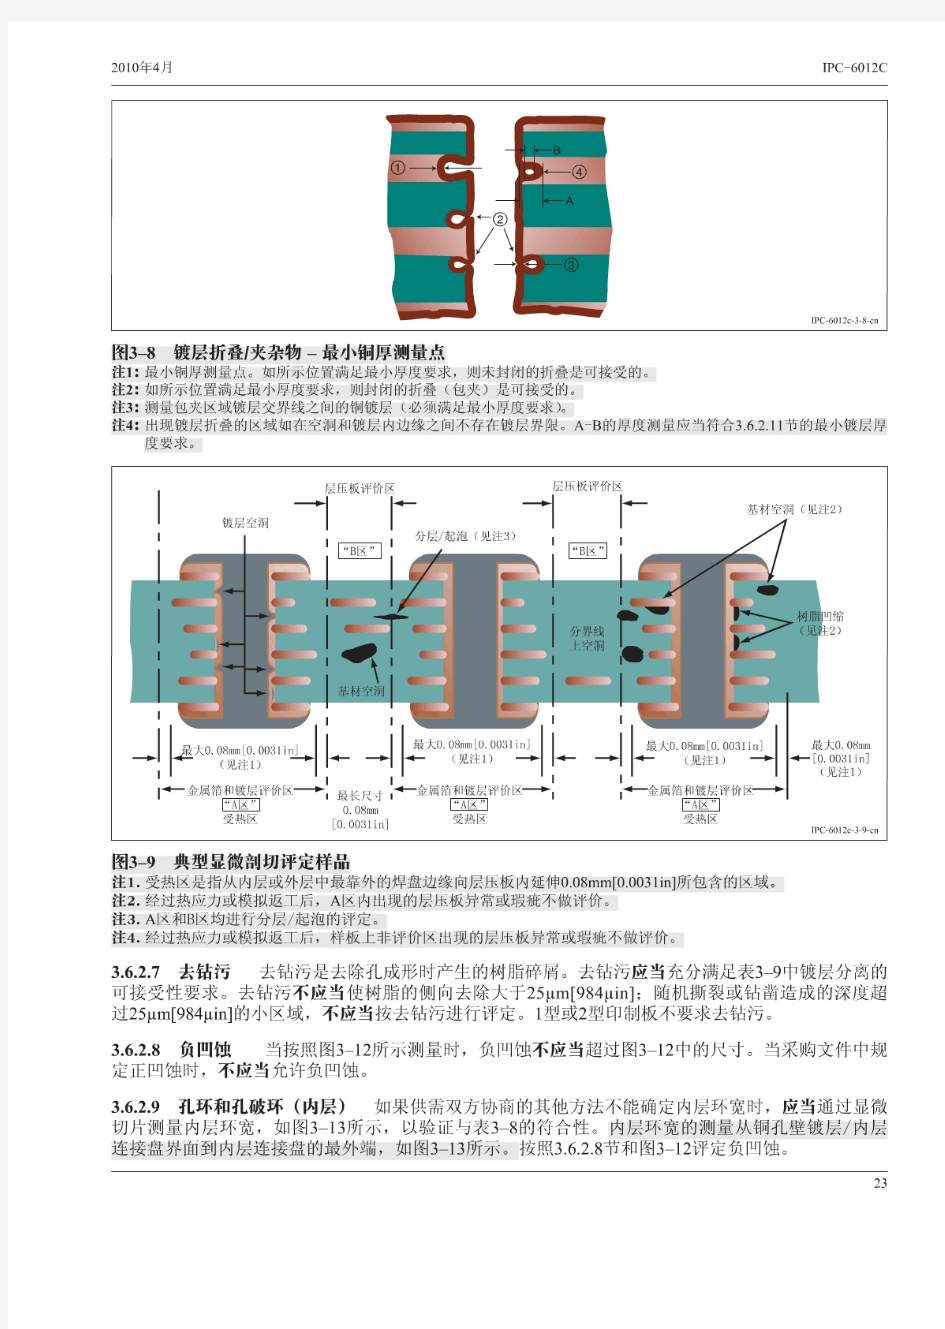 最新中文简体扫描C版-刚性线路板品质与性能规范IPC-6012C-PartB